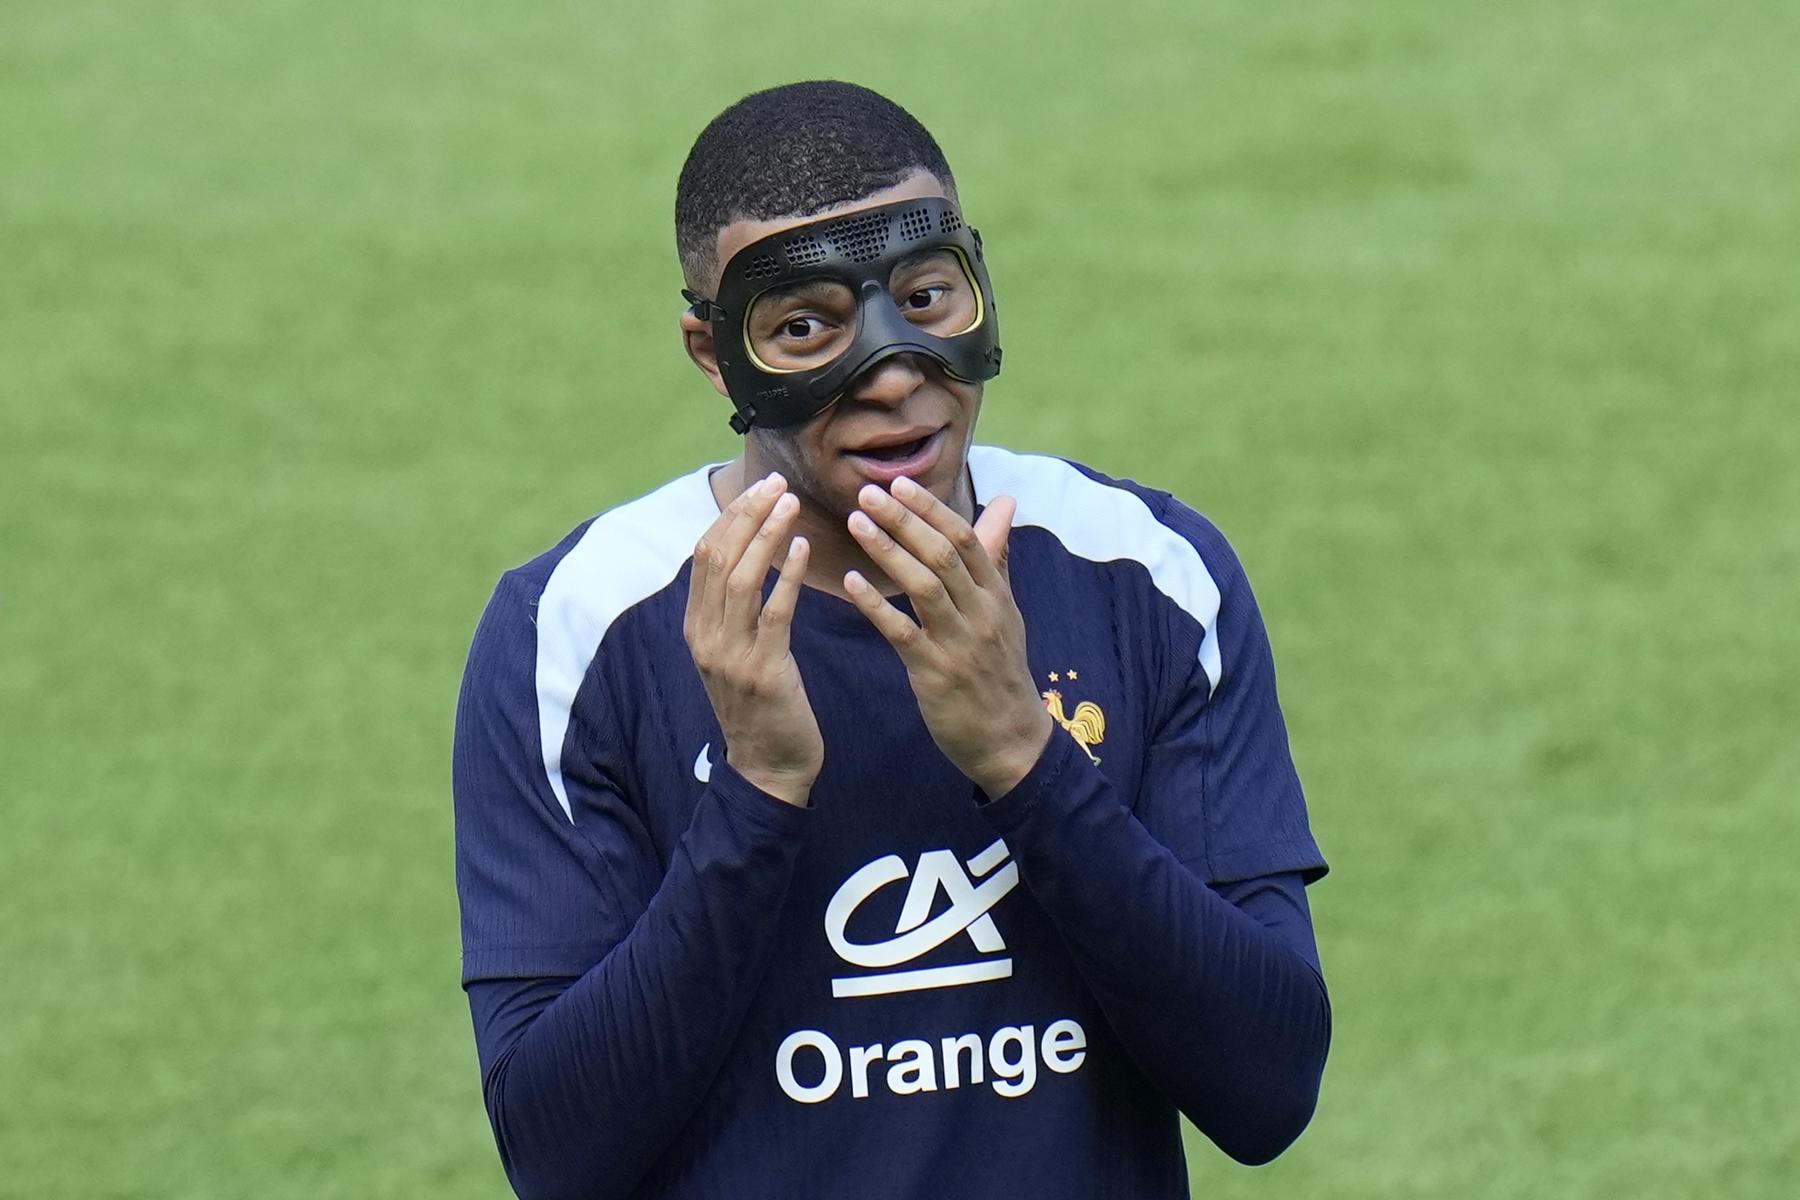 Nach Nasenbeinbruch: Frankreich-Star Kylian Mbappé leidet unter Maske: „Ich hasse es“